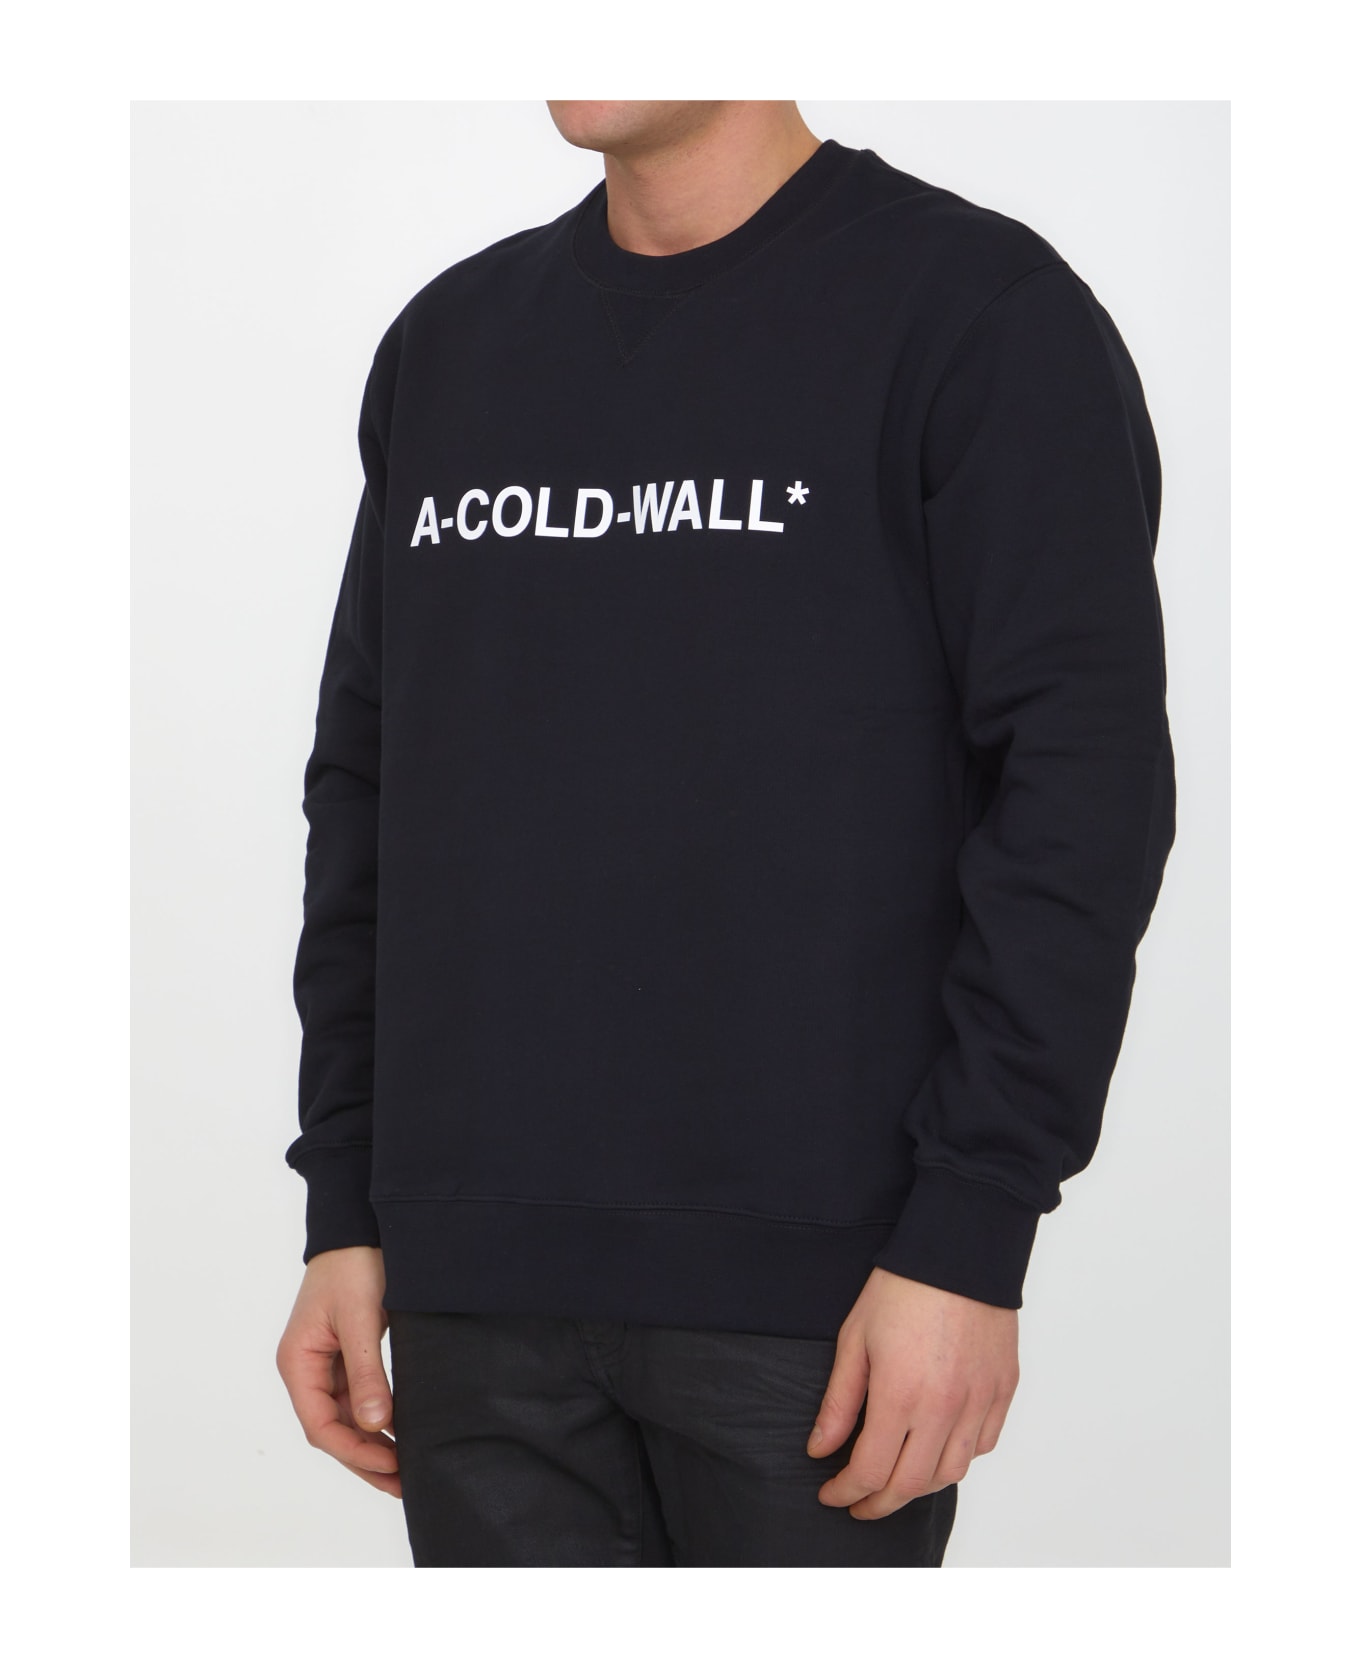 A-COLD-WALL Essential Logo Sweatshirt - BLACK